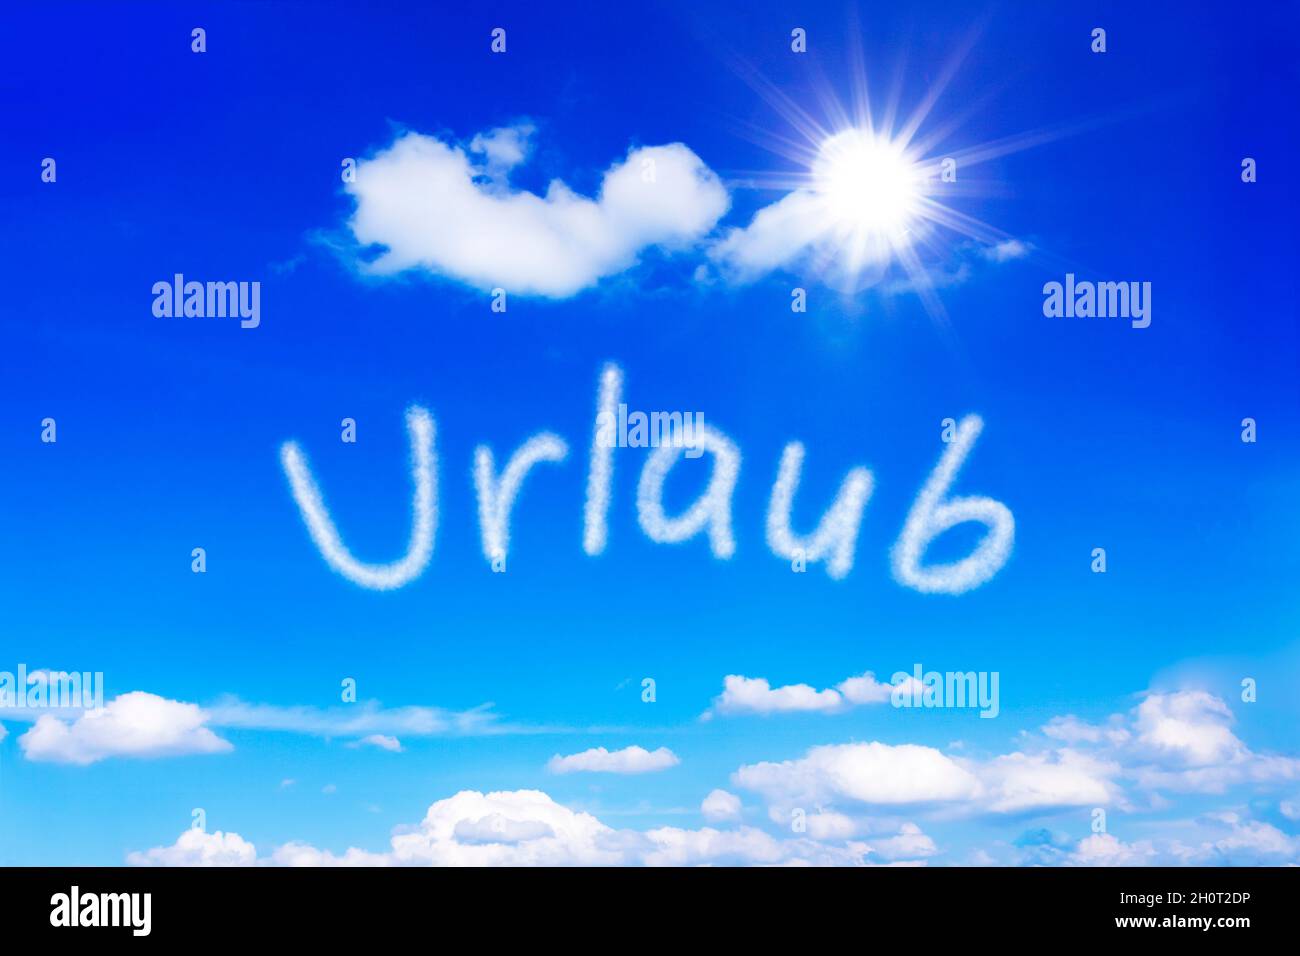 Palabra alemana Urlaub, que significa vacaciones, escrita en un cielo azul soleado. Símbolo para soñar con días de verano cálidos y despreocupados con un sol sin fin. Foto de stock